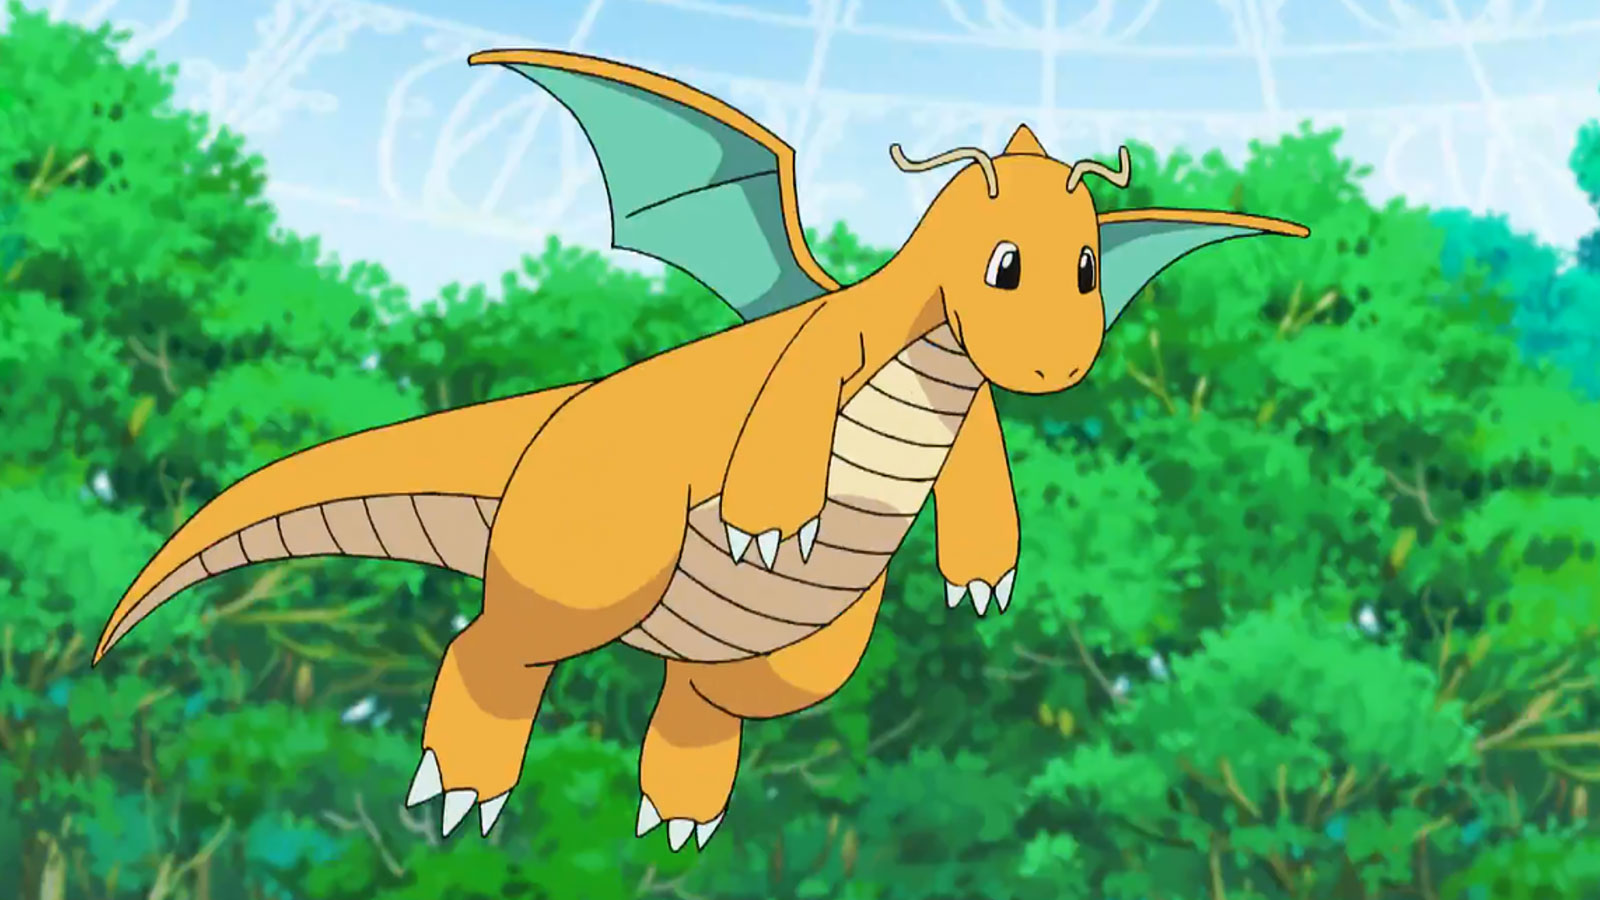 das Drachen-Pokémon Dragonite